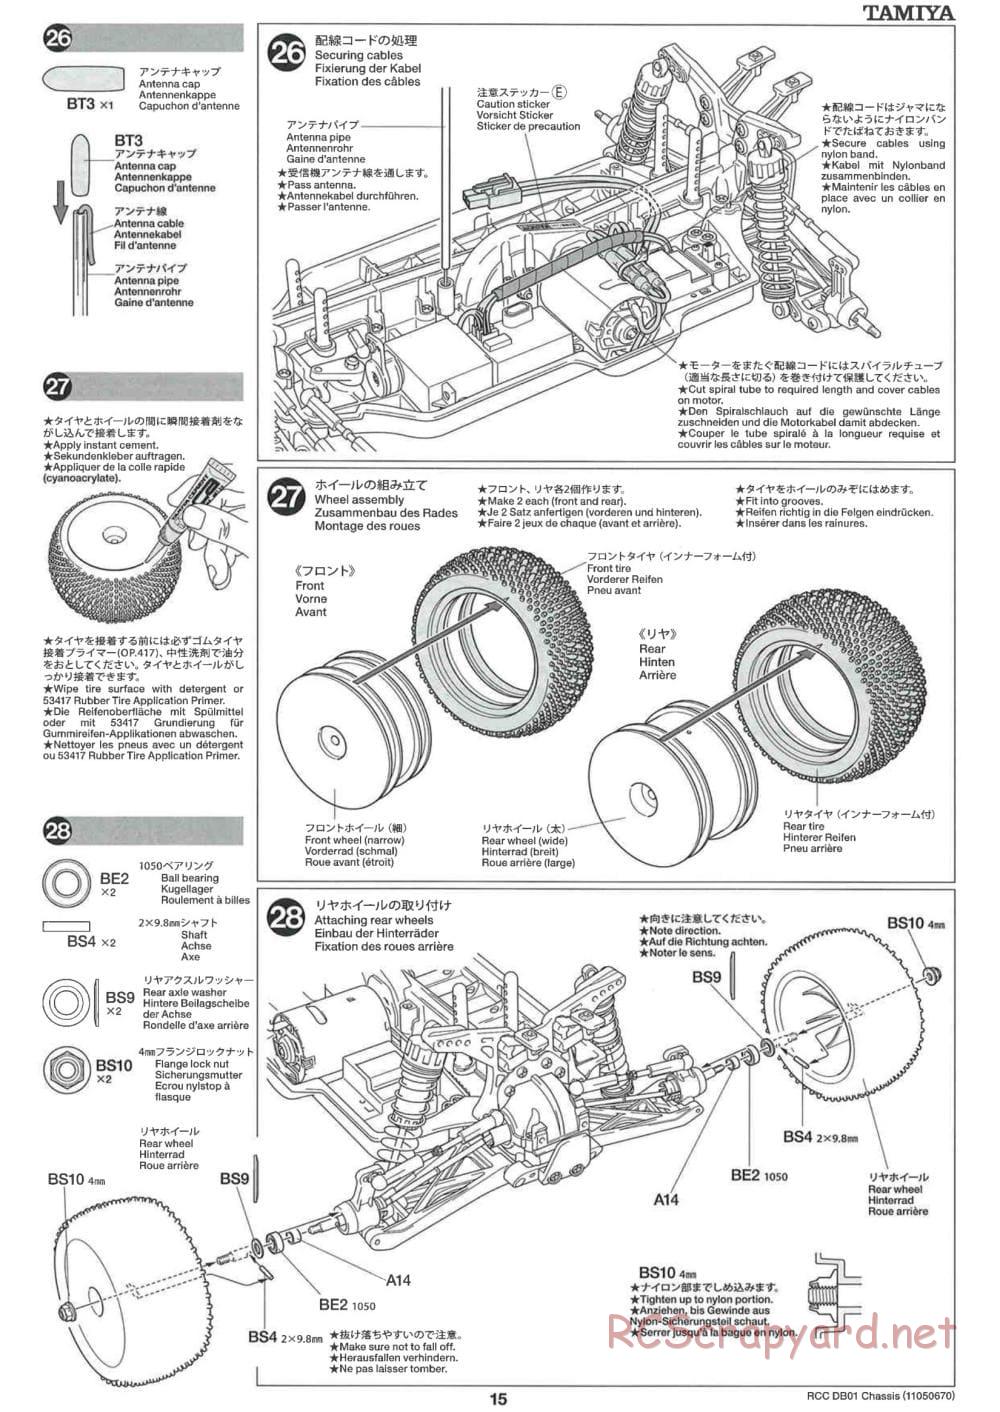 Tamiya - DB-01 Chassis - Manual - Page 15